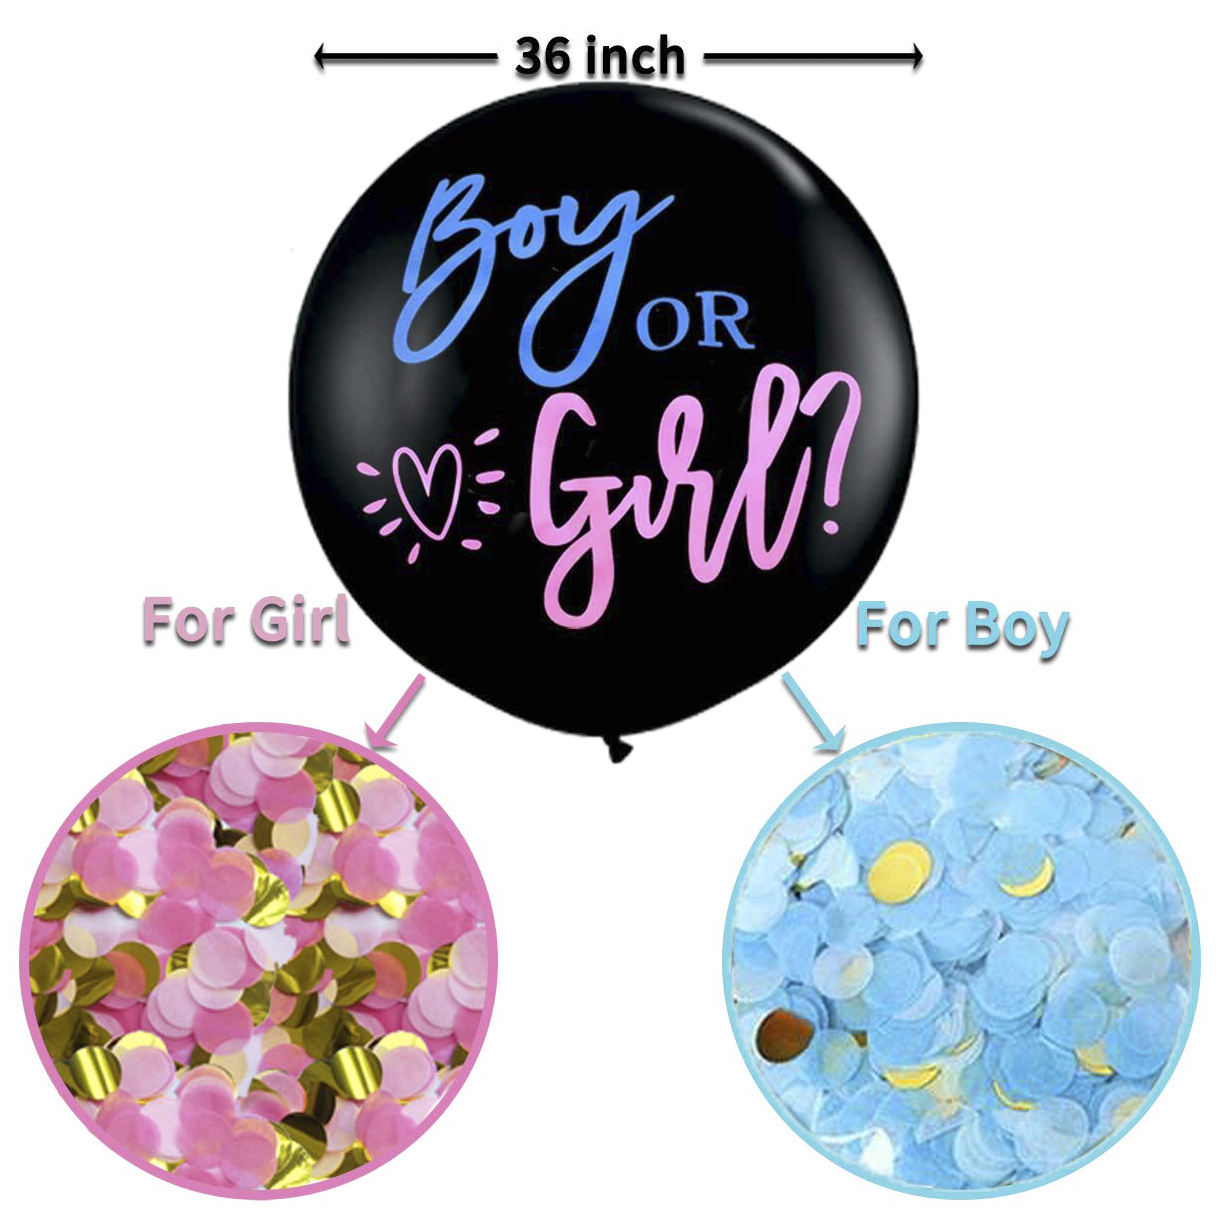 Boy or Girl Balloon - Colour